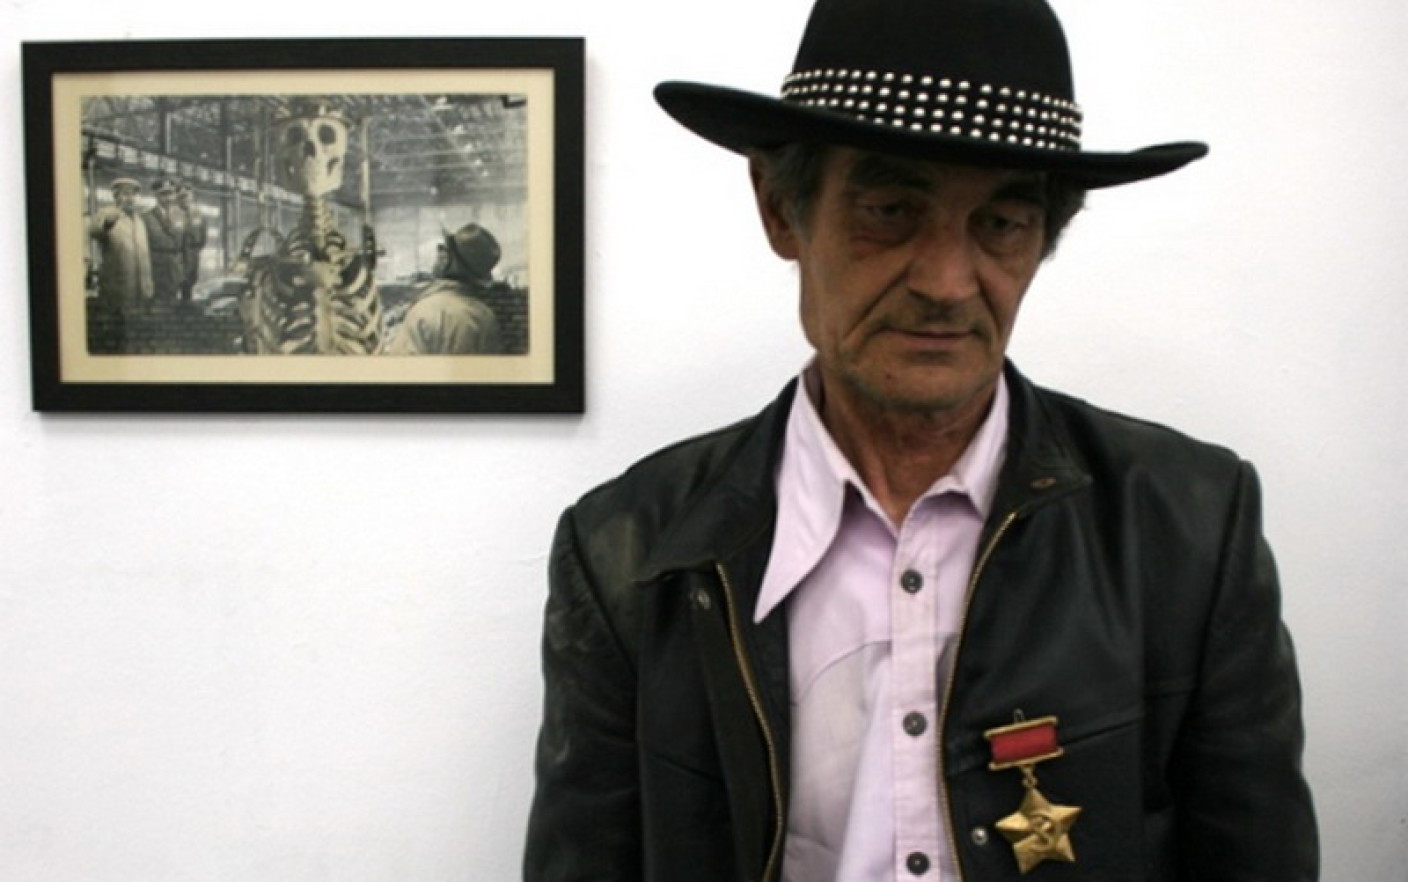 A murit artistul Ion Bârlădeanu, cunoscut pentru colajele pop art. ”Credeam că voi fi nemuritor”